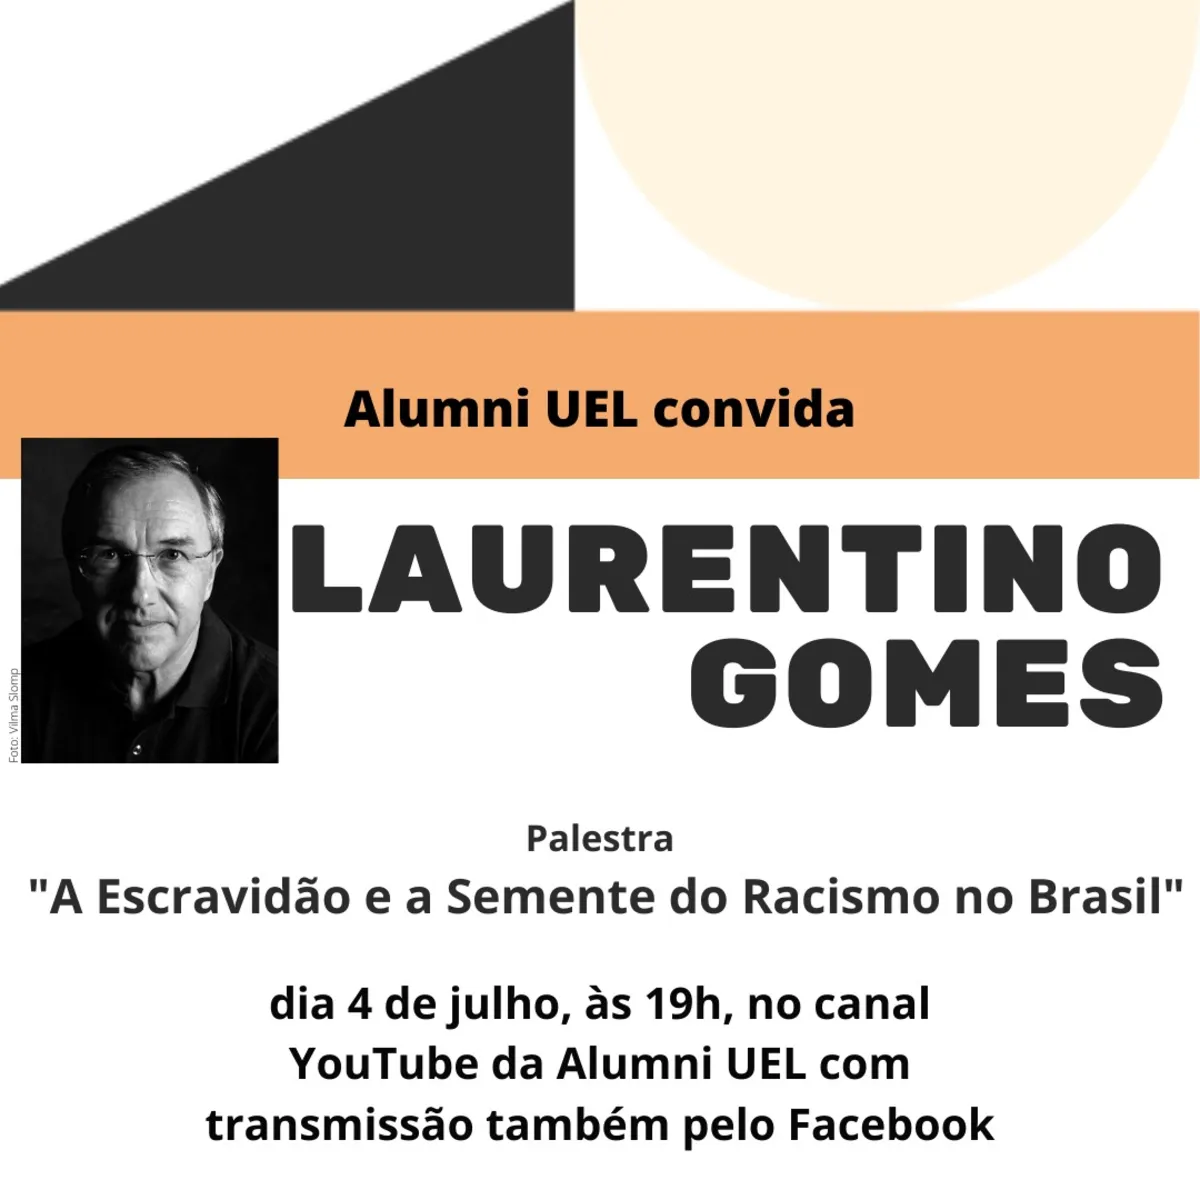 O escritor Laurentino Gomes ministrará palestra pelo YouTube com o tema “A Escravidão e a Semente do Racismo no Brasil”.